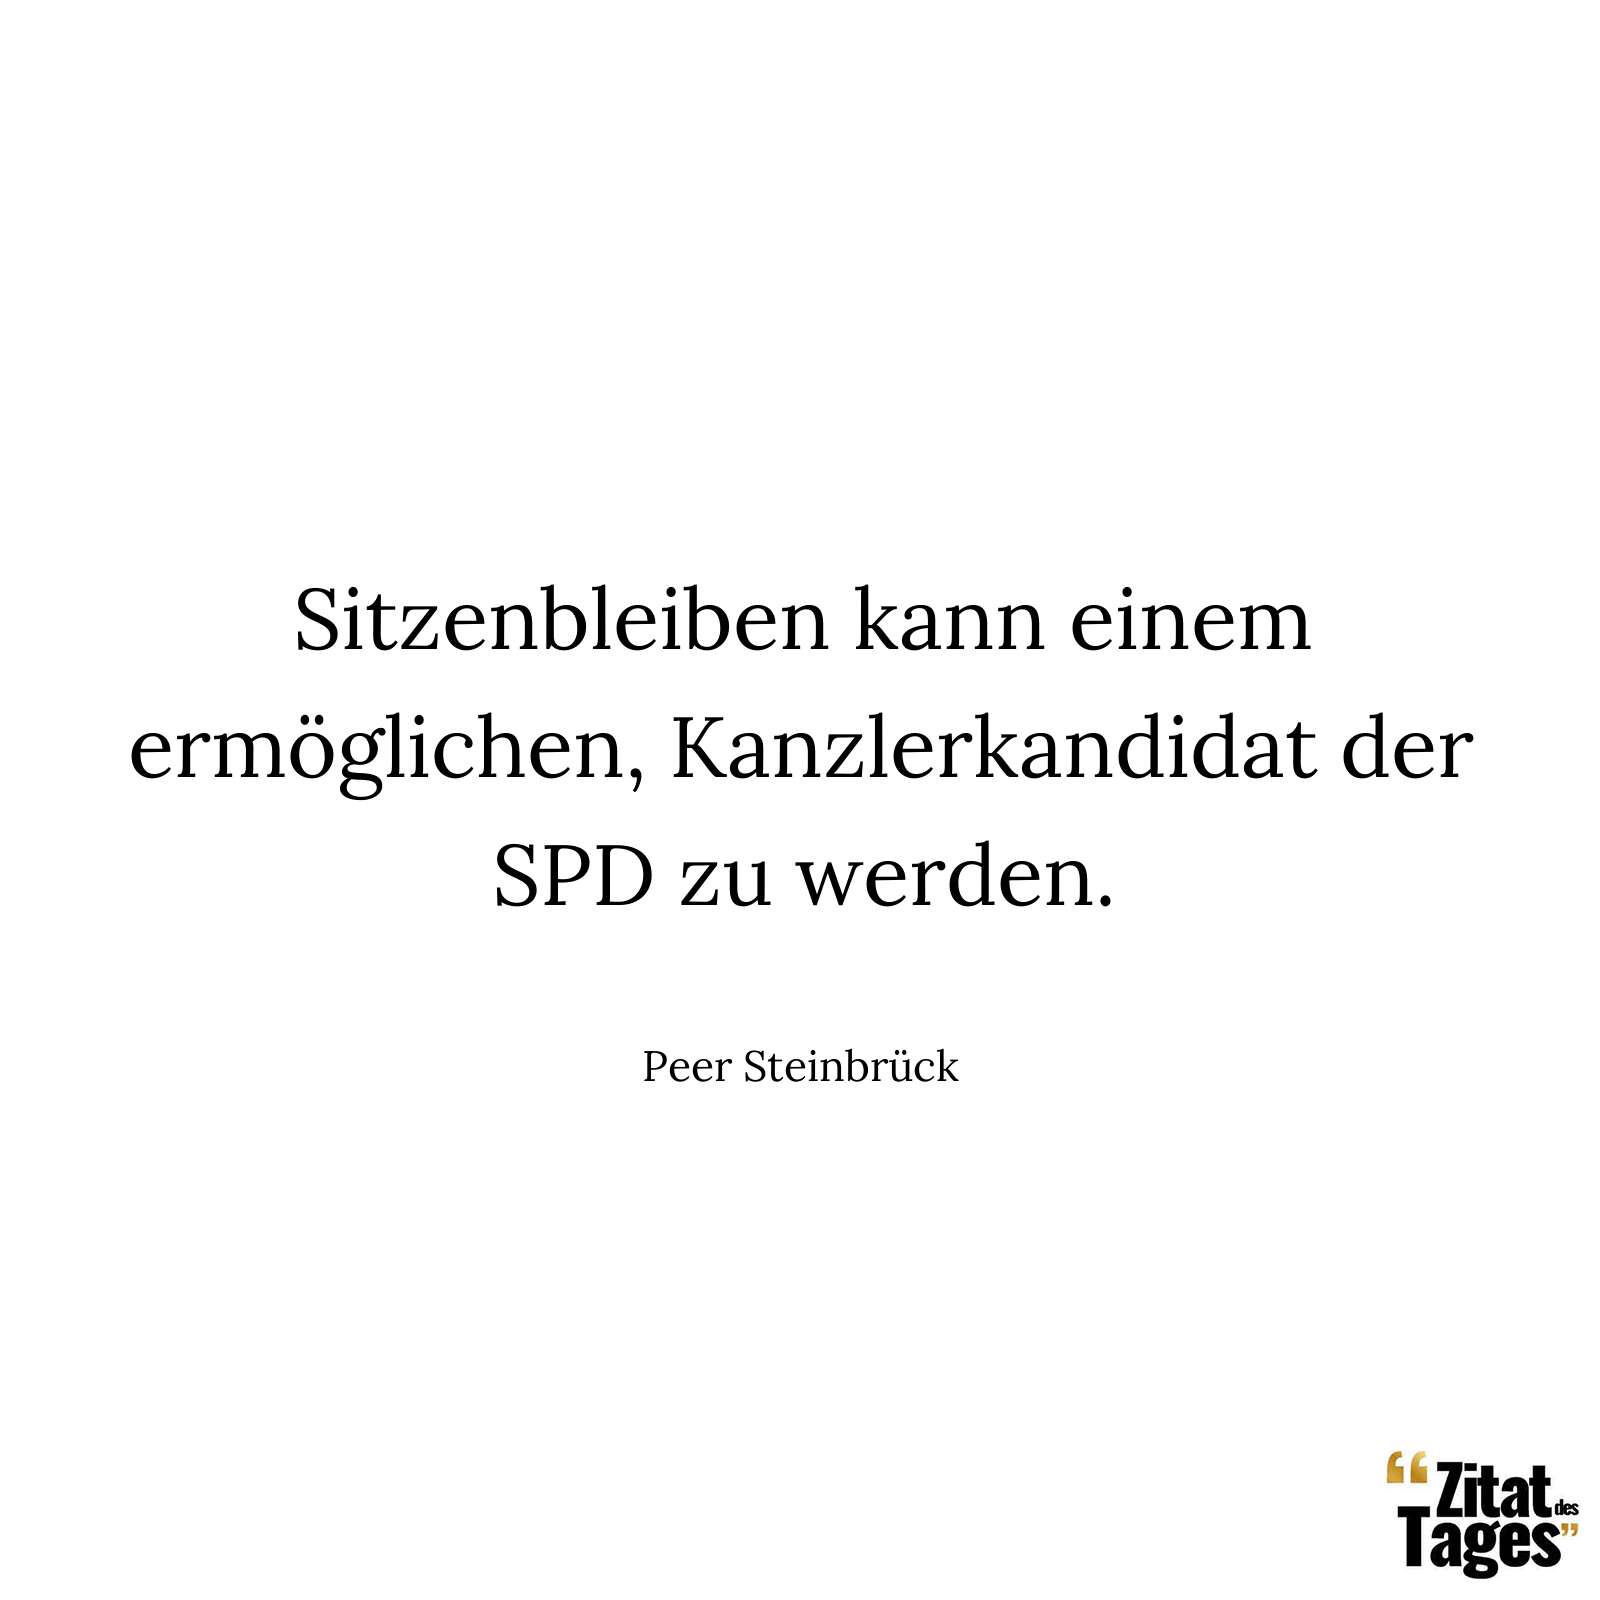 Sitzenbleiben kann einem ermöglichen, Kanzlerkandidat der SPD zu werden. - Peer Steinbrück